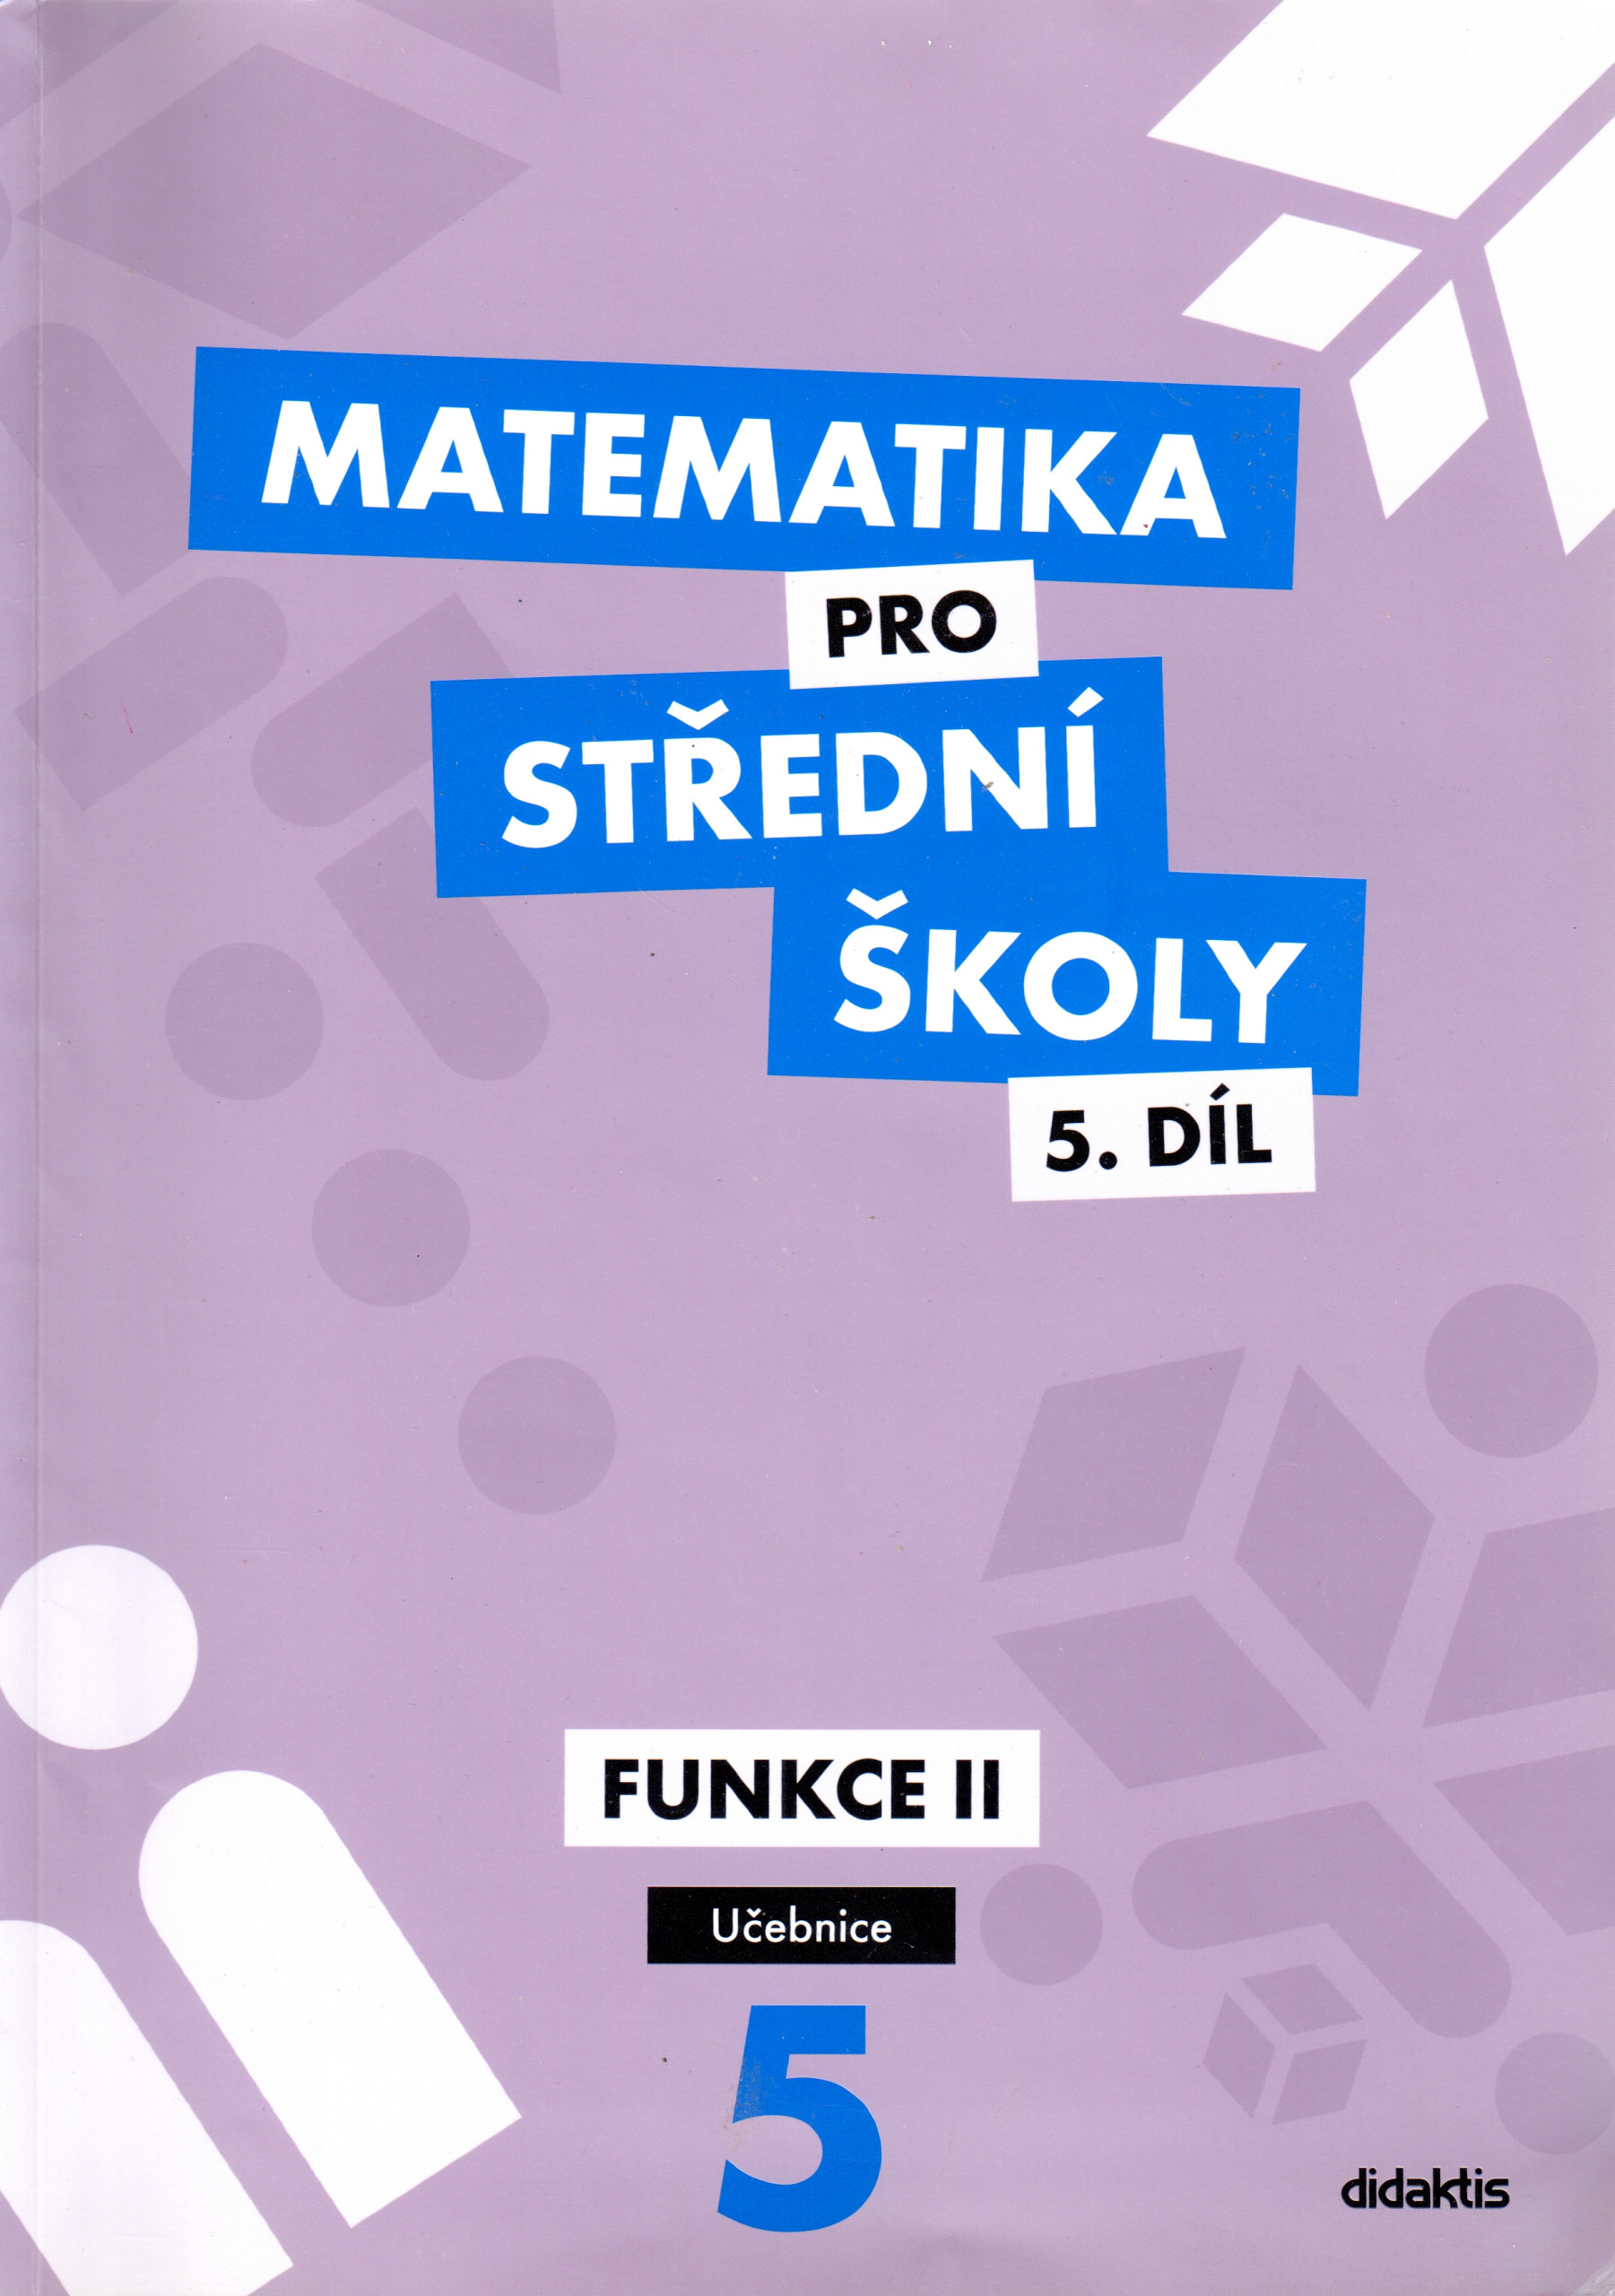 Matematika pro střední školy (5. díl) : funkce II (učebnice) - Náhled učebnice